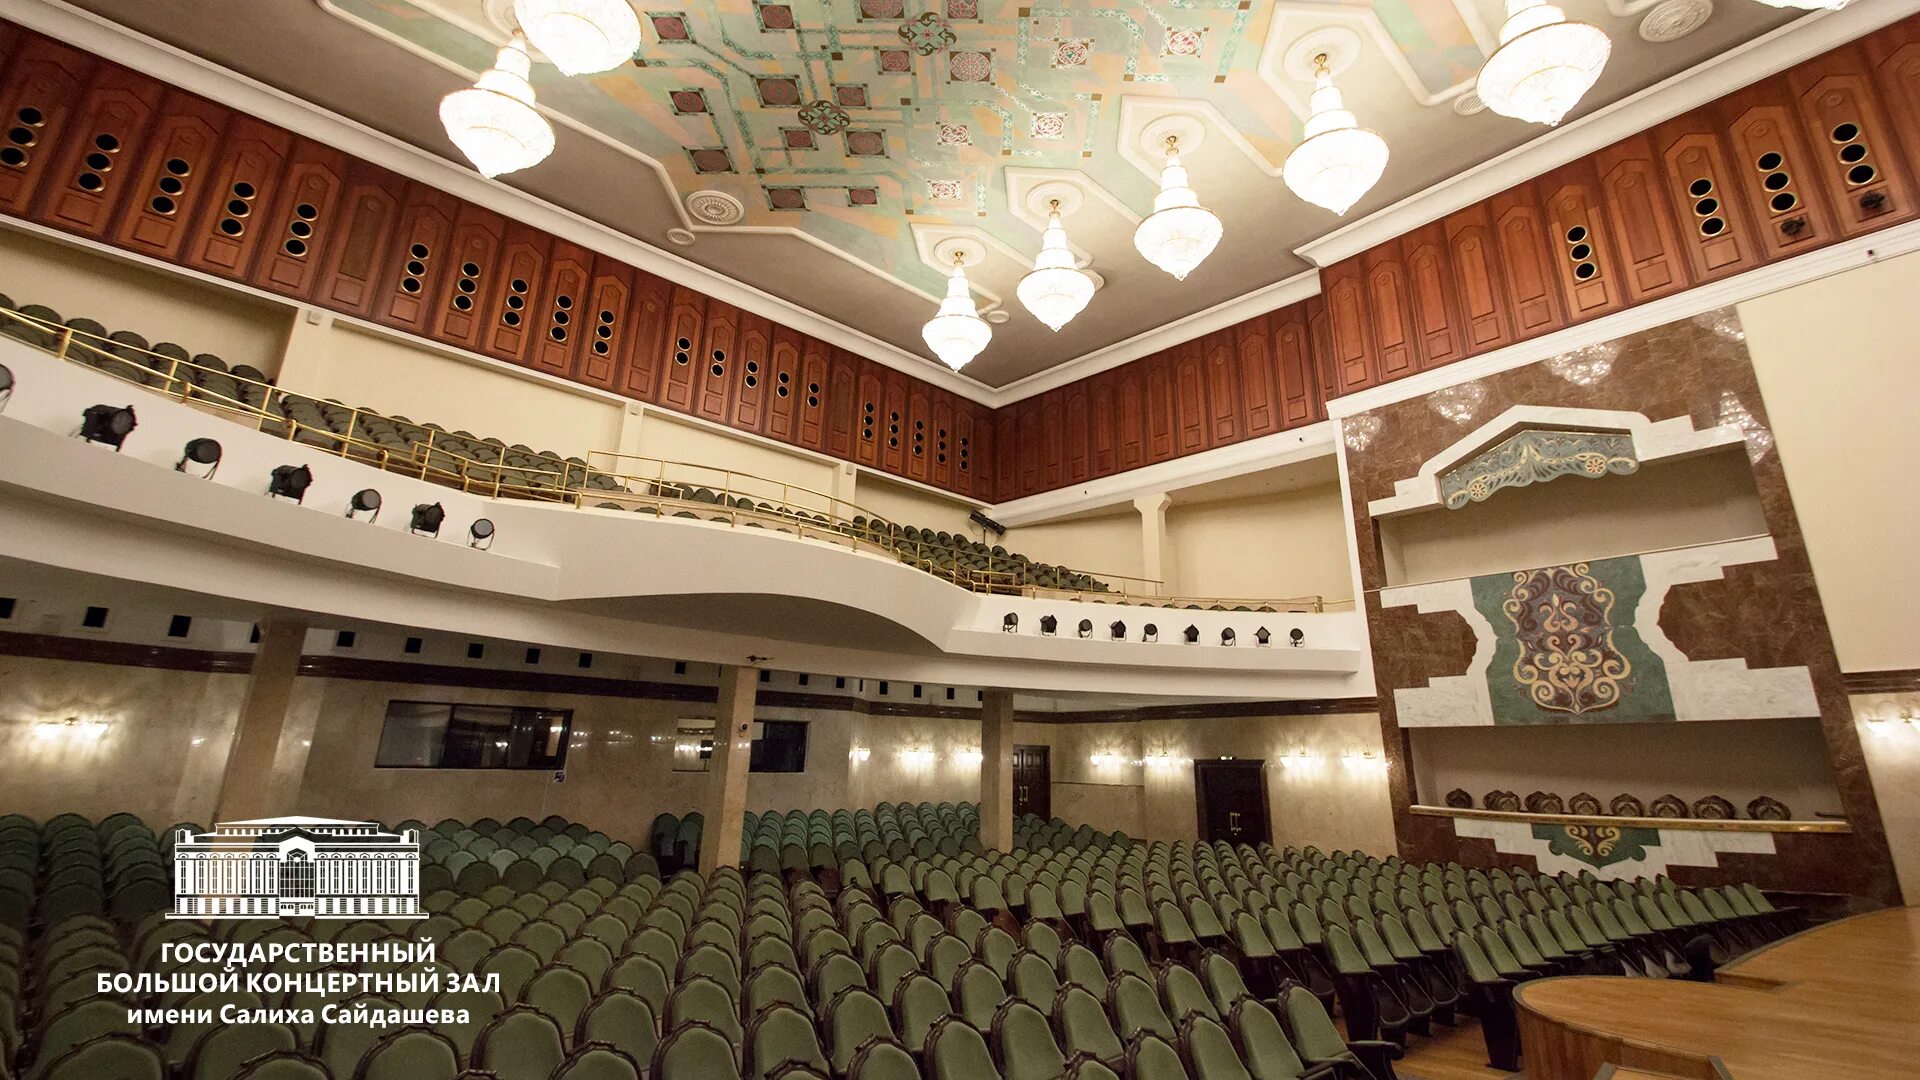 Большой концертный зал салиха сайдашева. Салиха Сайдашева концертный зал. Театр Казань концертный зал Салиха Сайдашева. Камерный зал ГБКЗ Сайдашева. Госуда́рственный большо́й конце́ртный зал и́мени Сали́ха Сайда́шева.